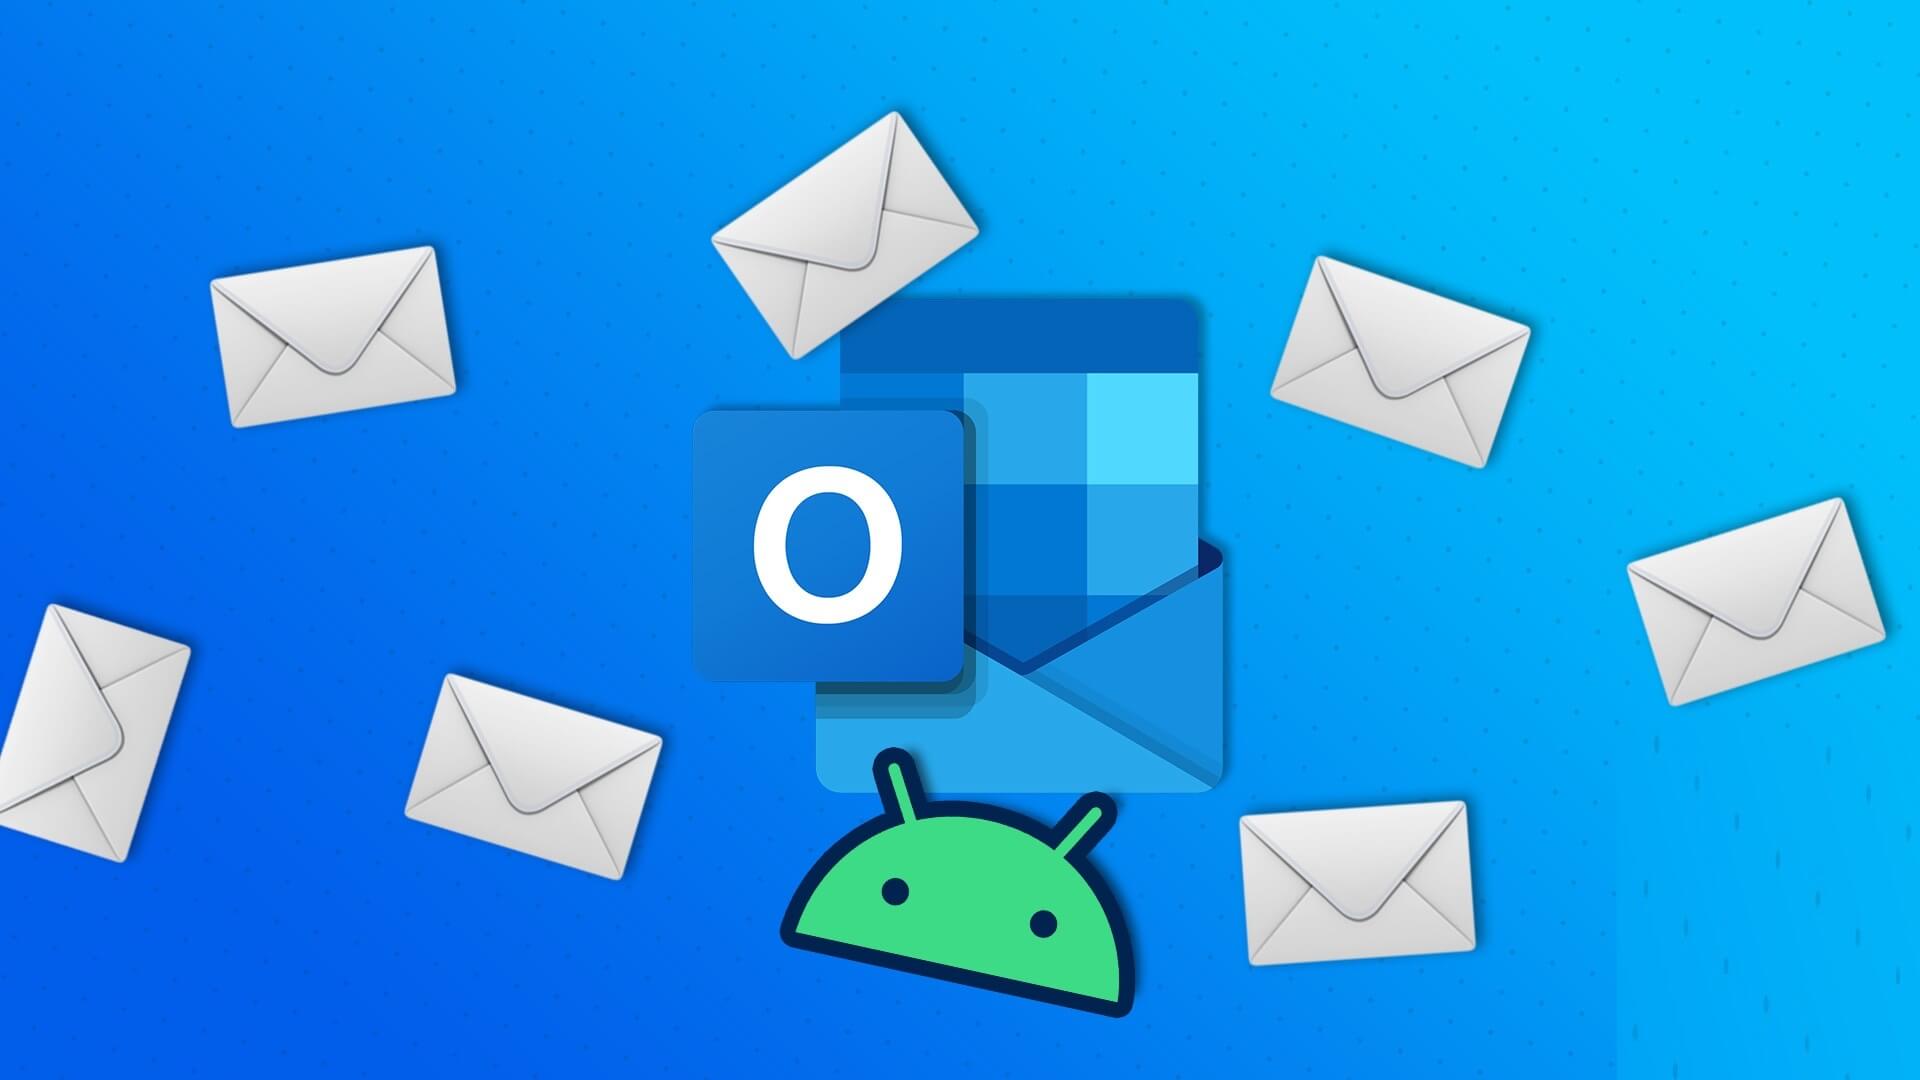 أفضل 9 طرق لإصلاح عدم تلقي Microsoft Outlook لرسائل البريد الإلكتروني على Android - %categories